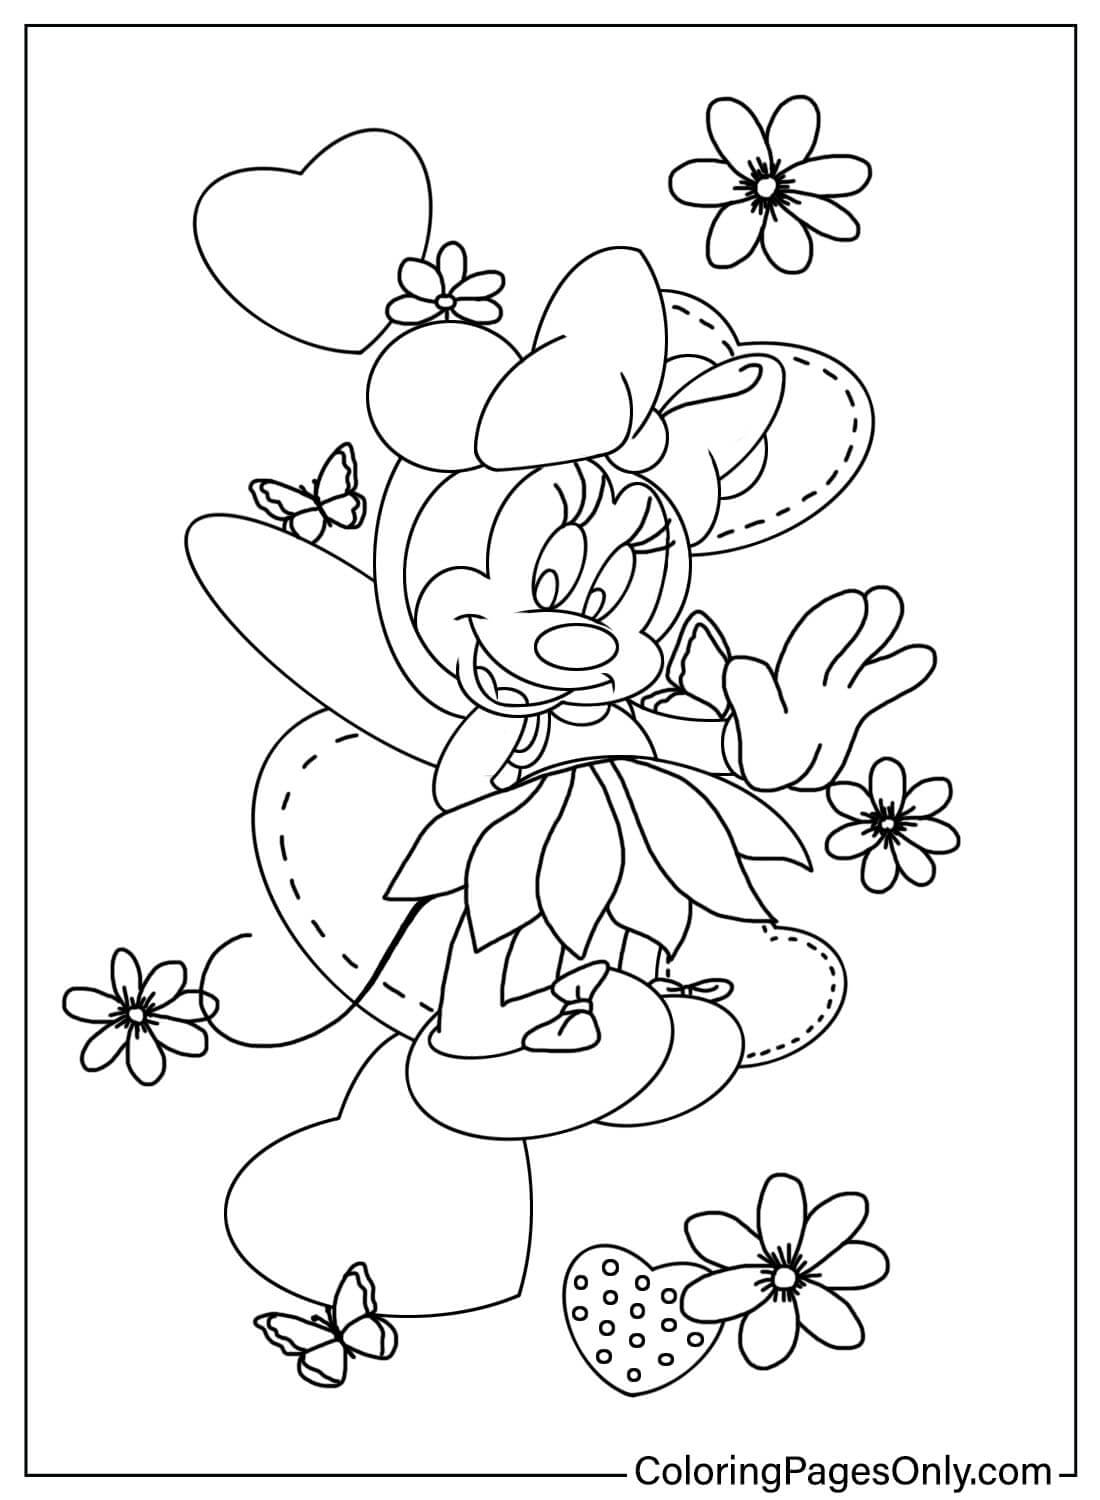 Bellissima pagina da colorare di Minnie Mouse di Minnie Mouse